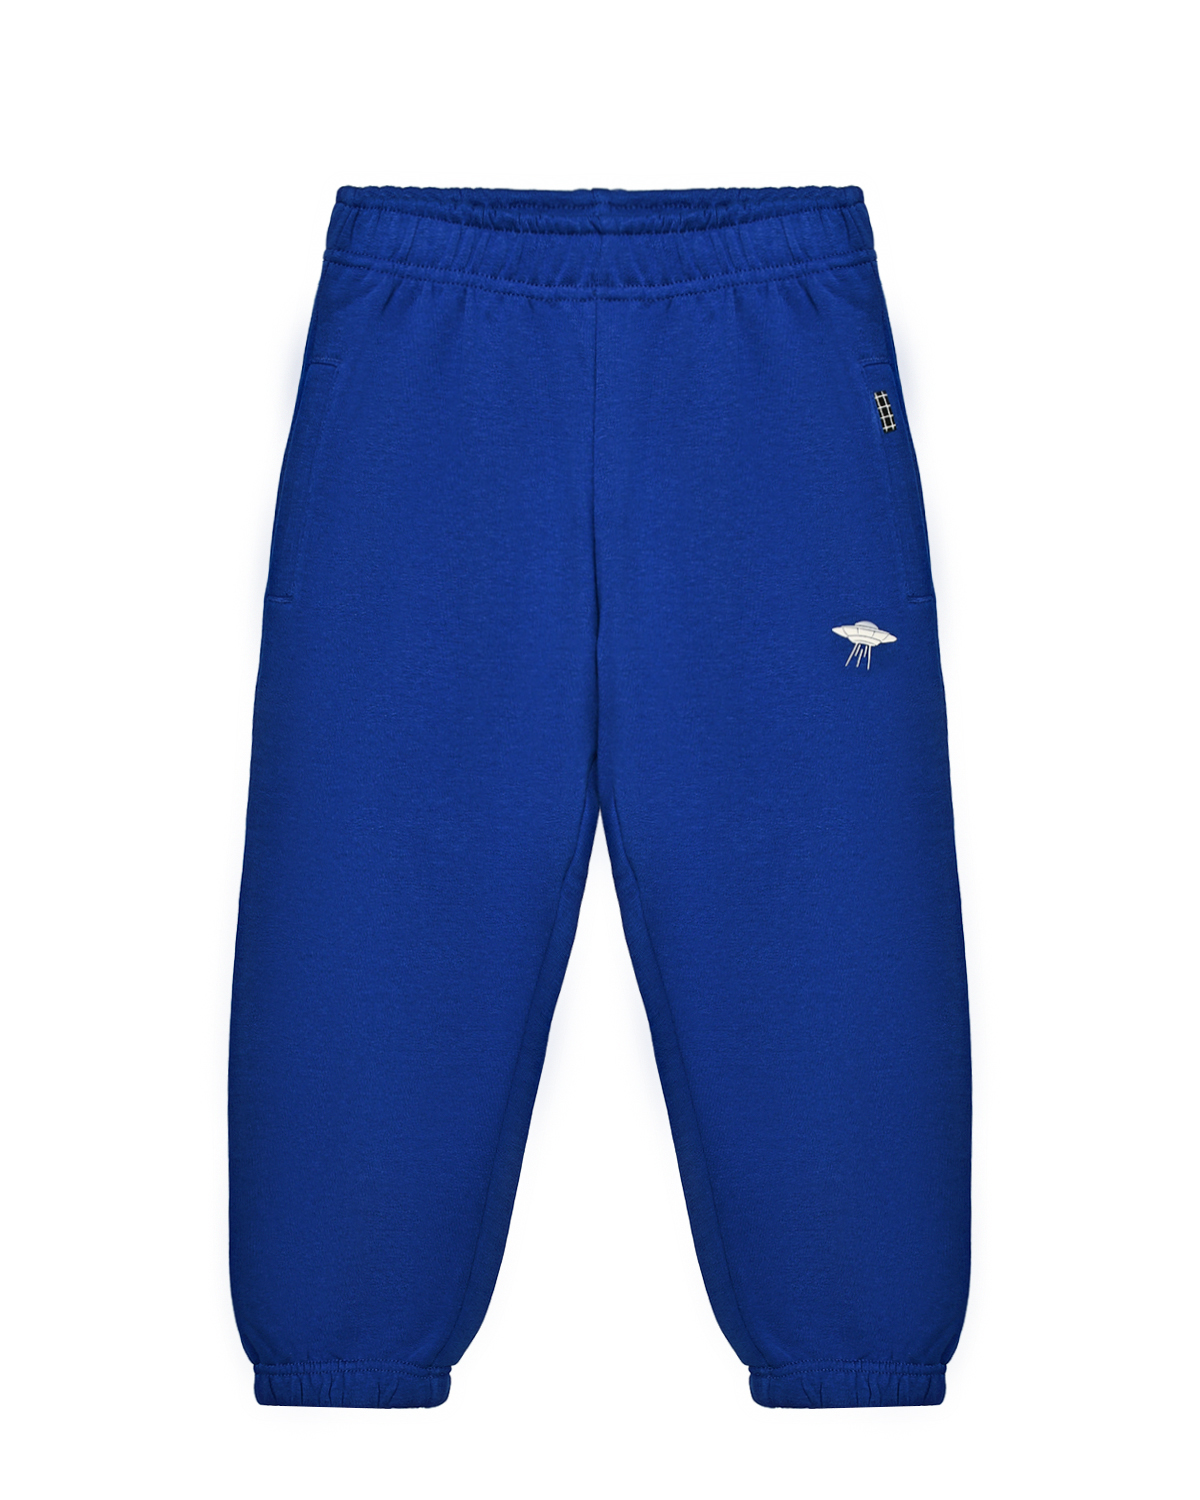 Спортивные брюки Adan Reef Blue Molo, размер 110, цвет синий